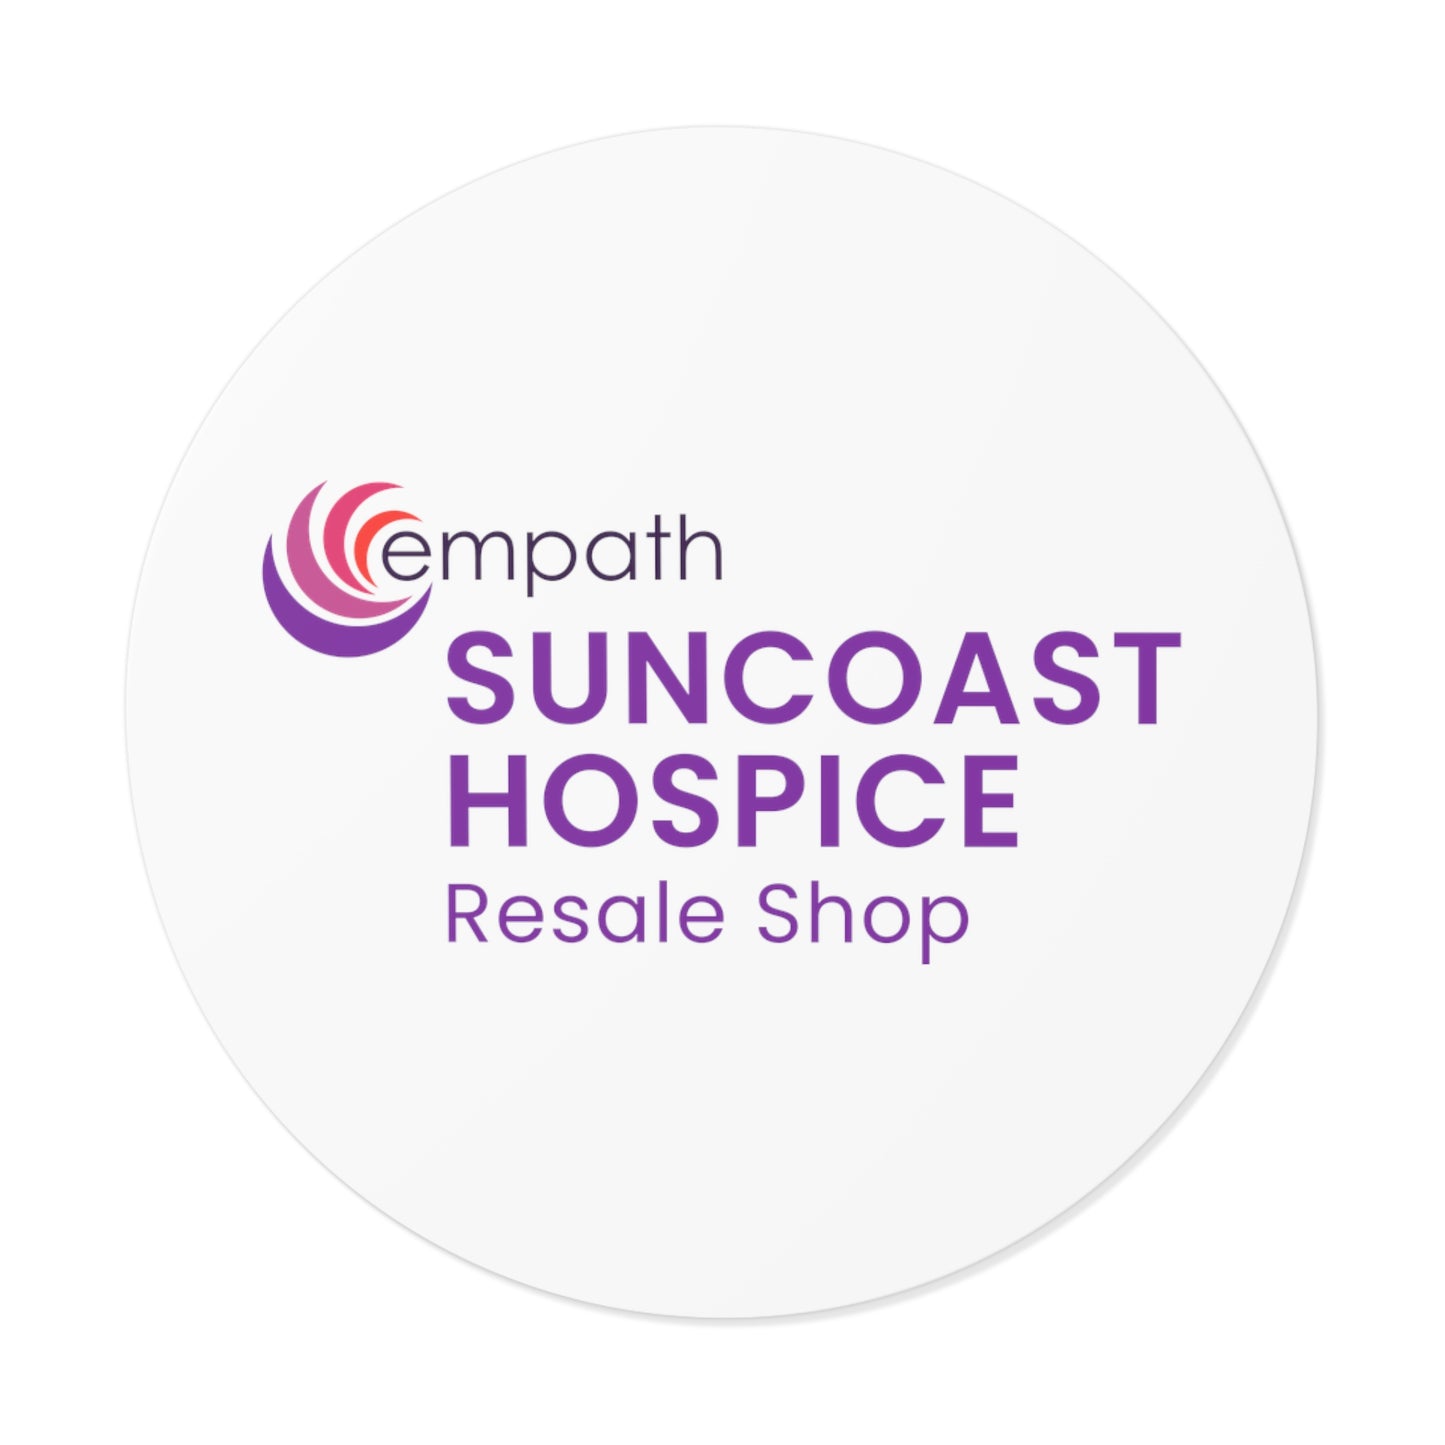 Round Vinyl Stickers - Suncoast Resale Shop